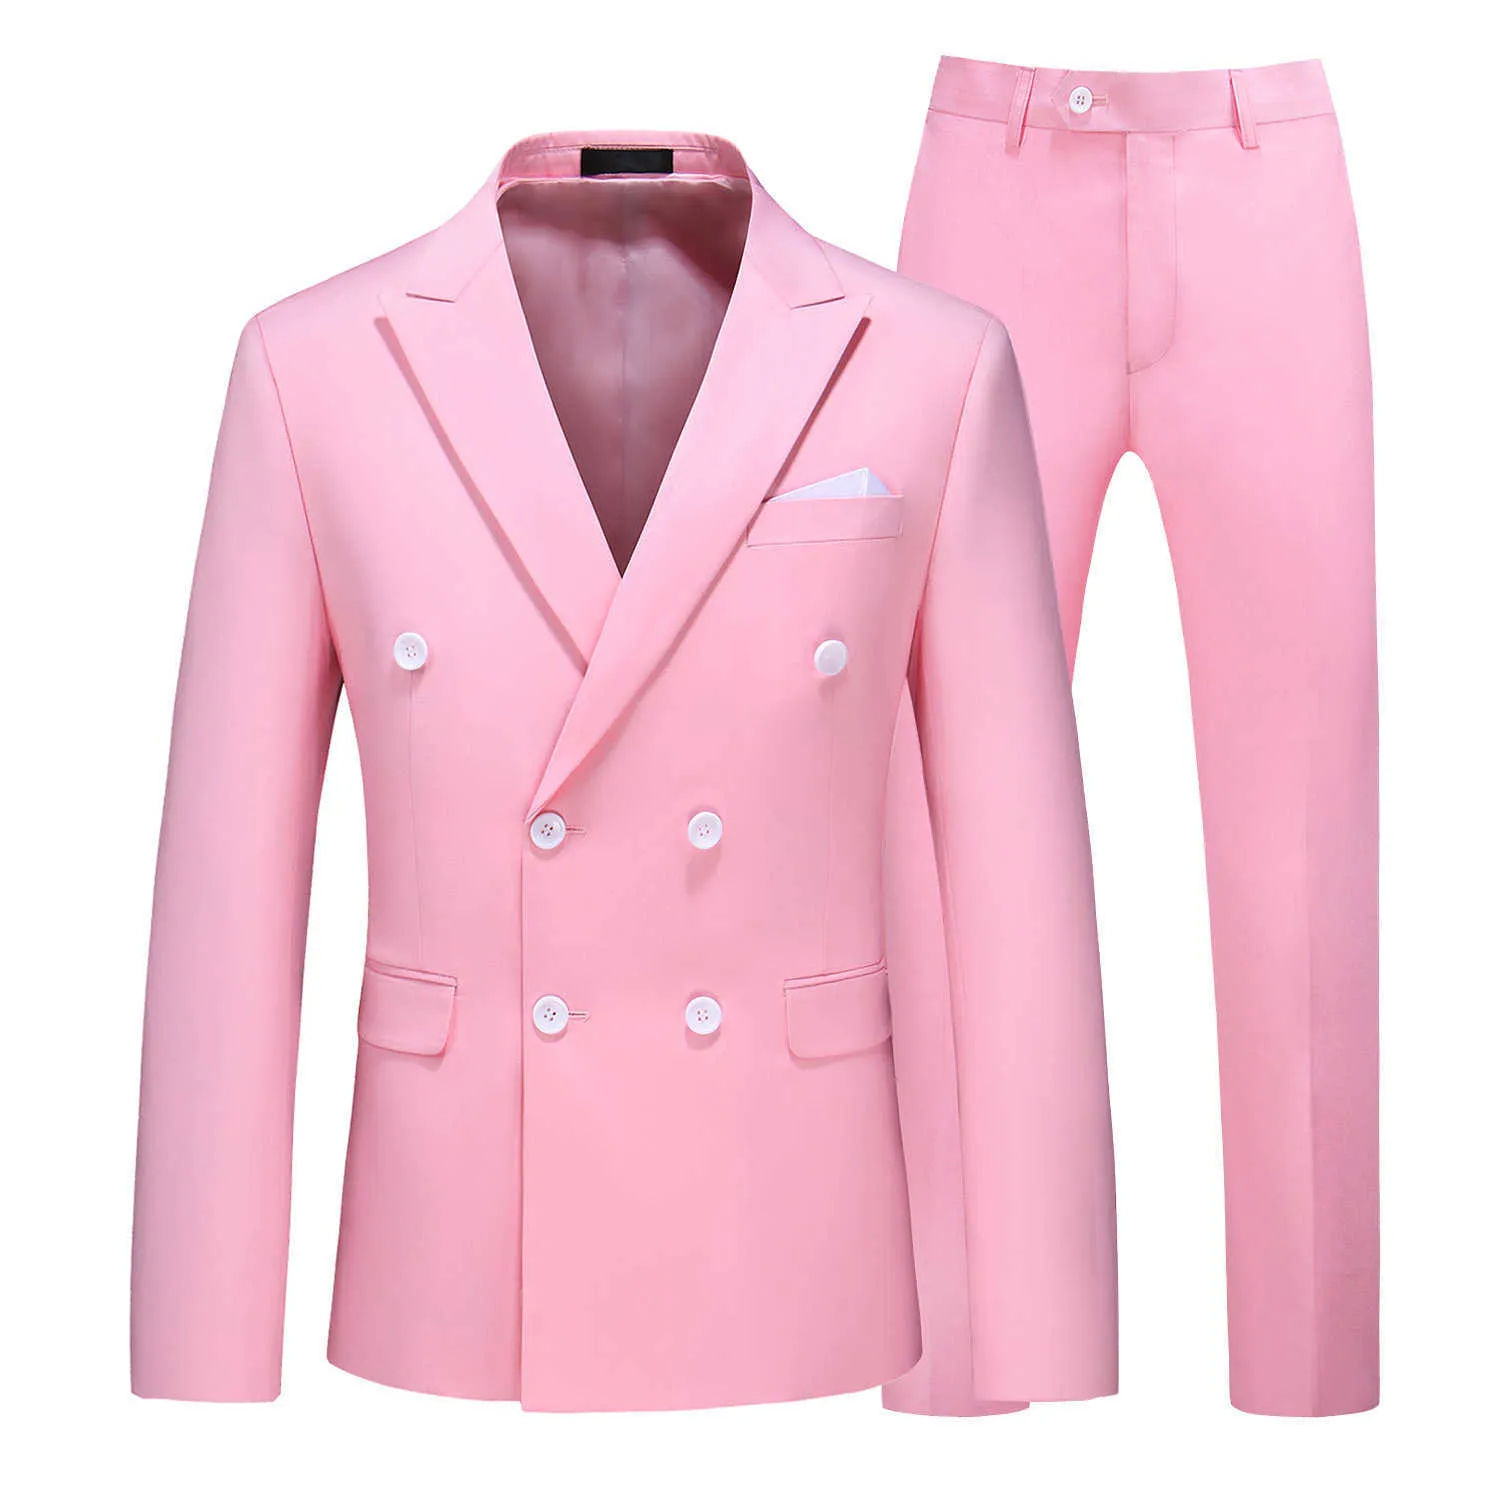 2021 Smokin Takım Elbise Erkek İş Çalışma Damat Gelinlik Resmi Suit Fit Çift Göğüslü Takım Elbise Ceket ile Pantolon 10 Colour X0909